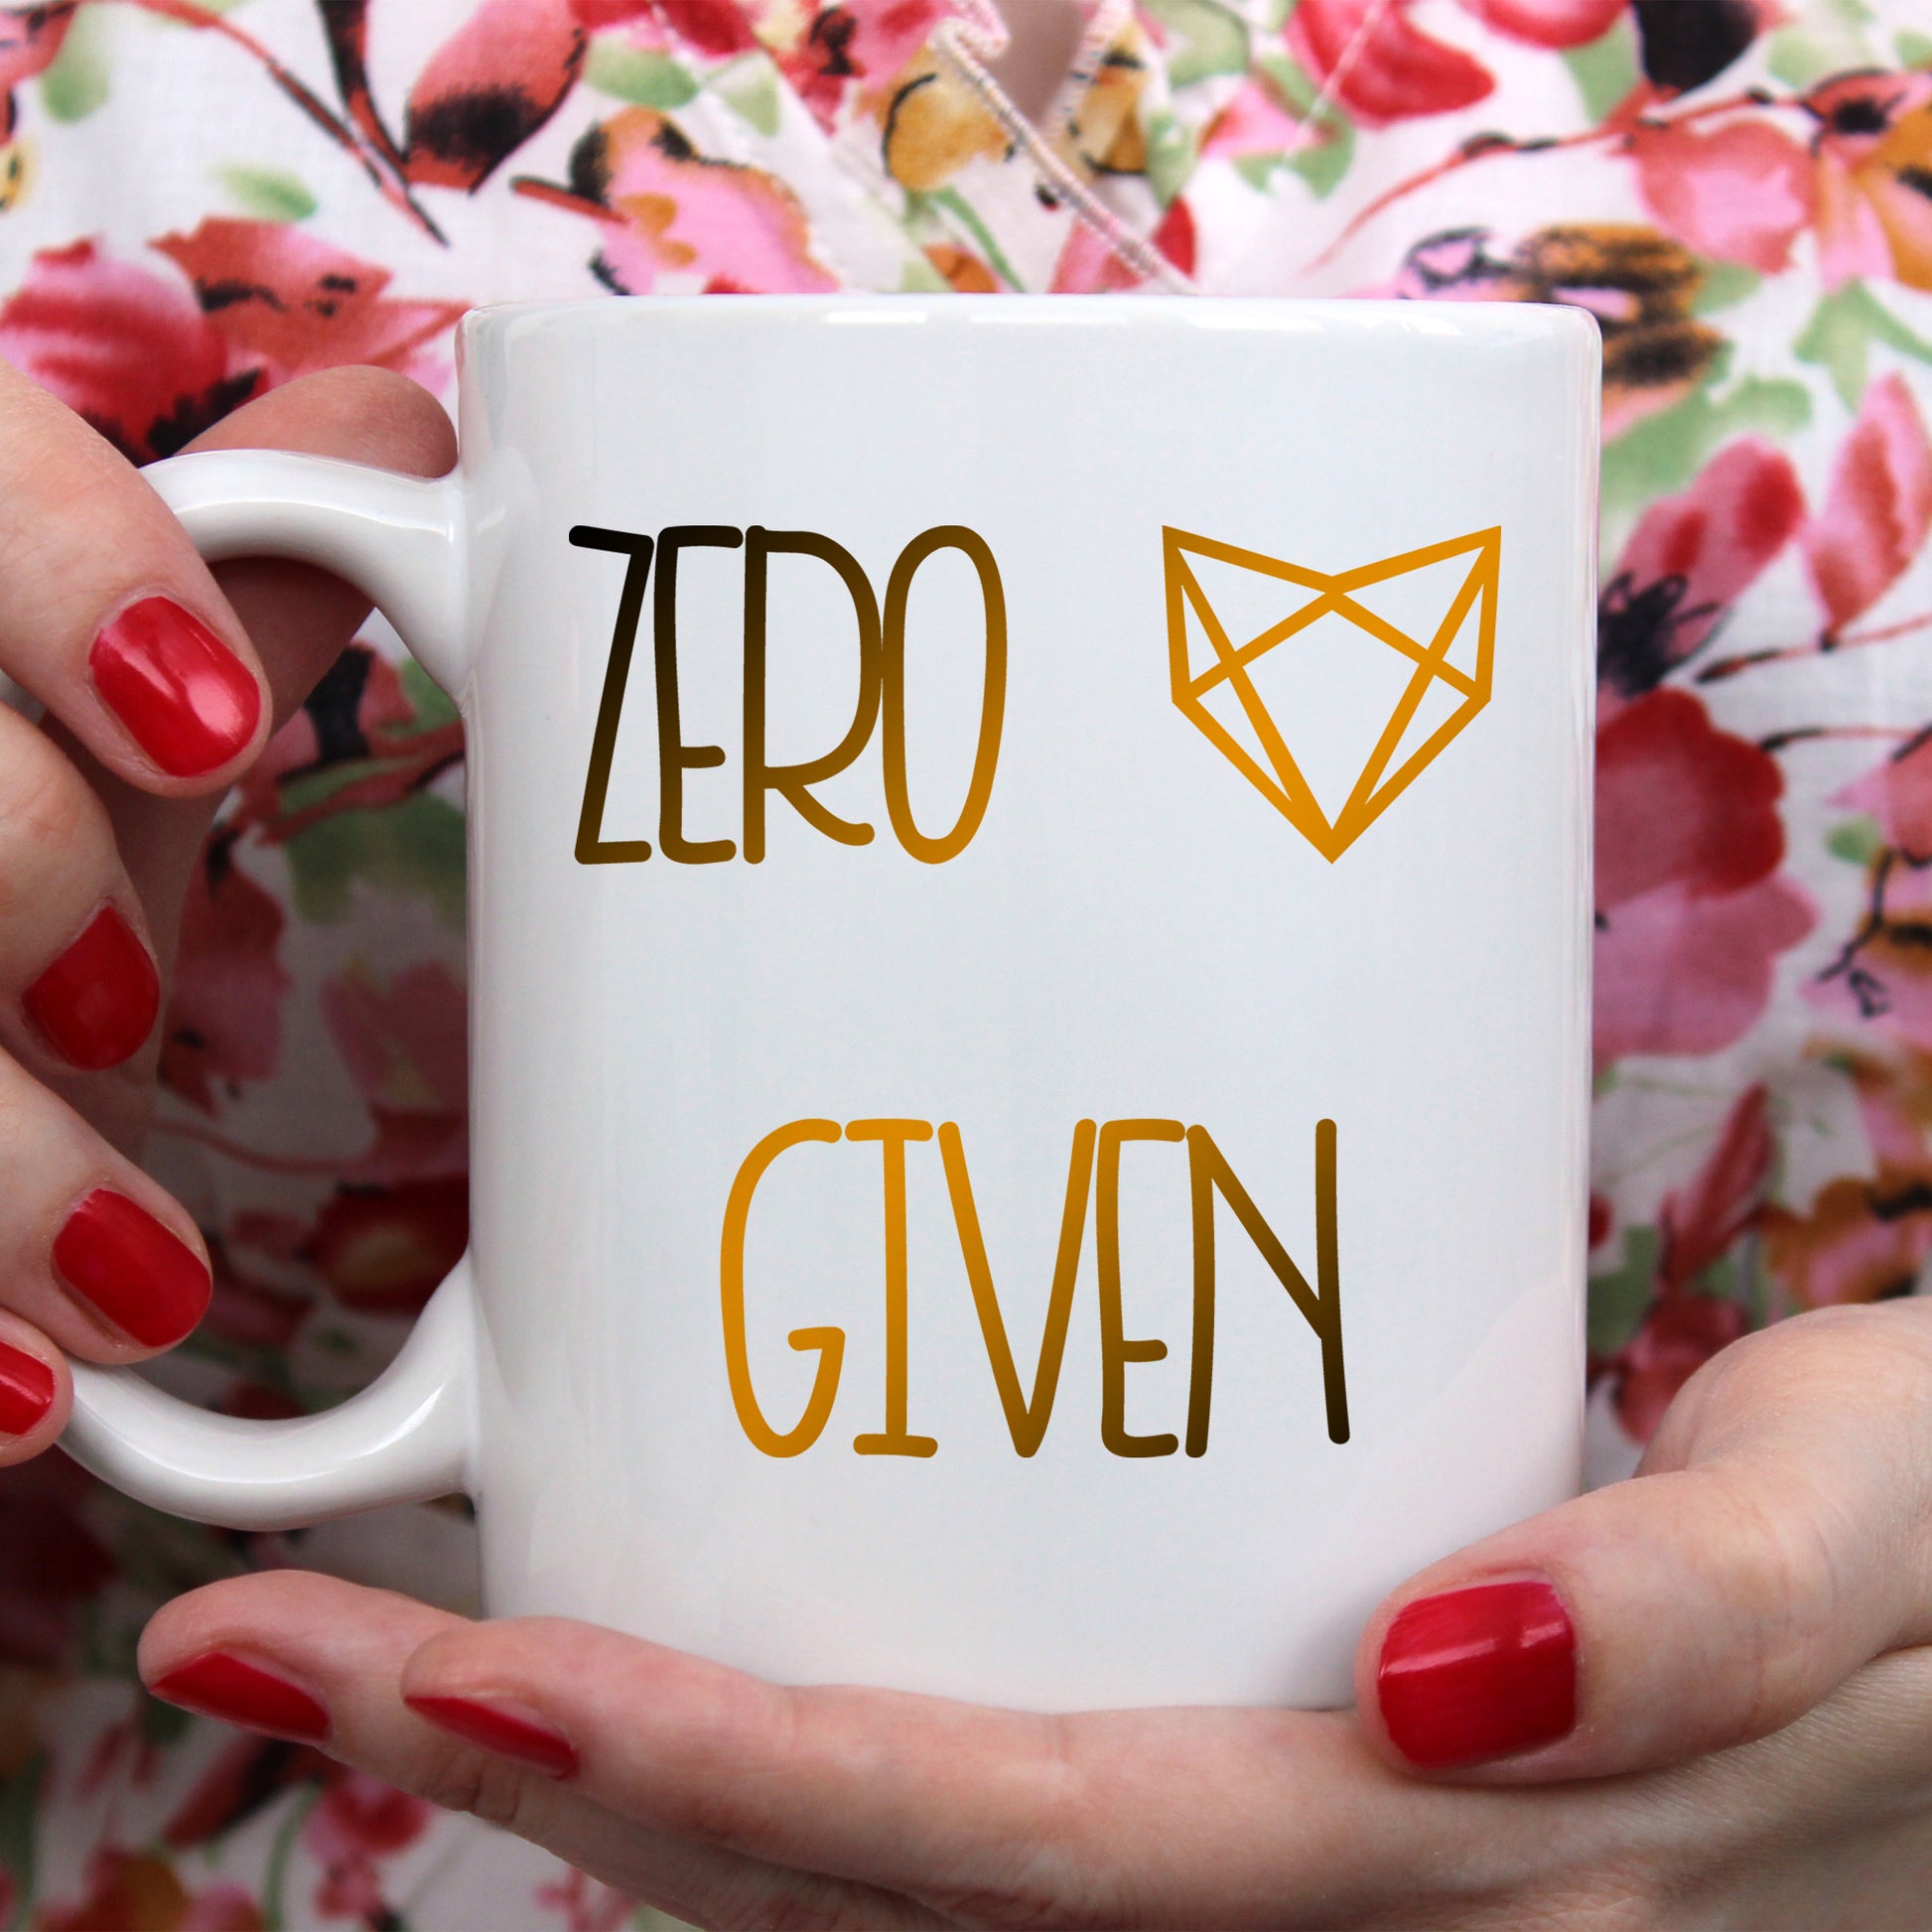 Zero fox given | Ceramic mug - Adnil Creations